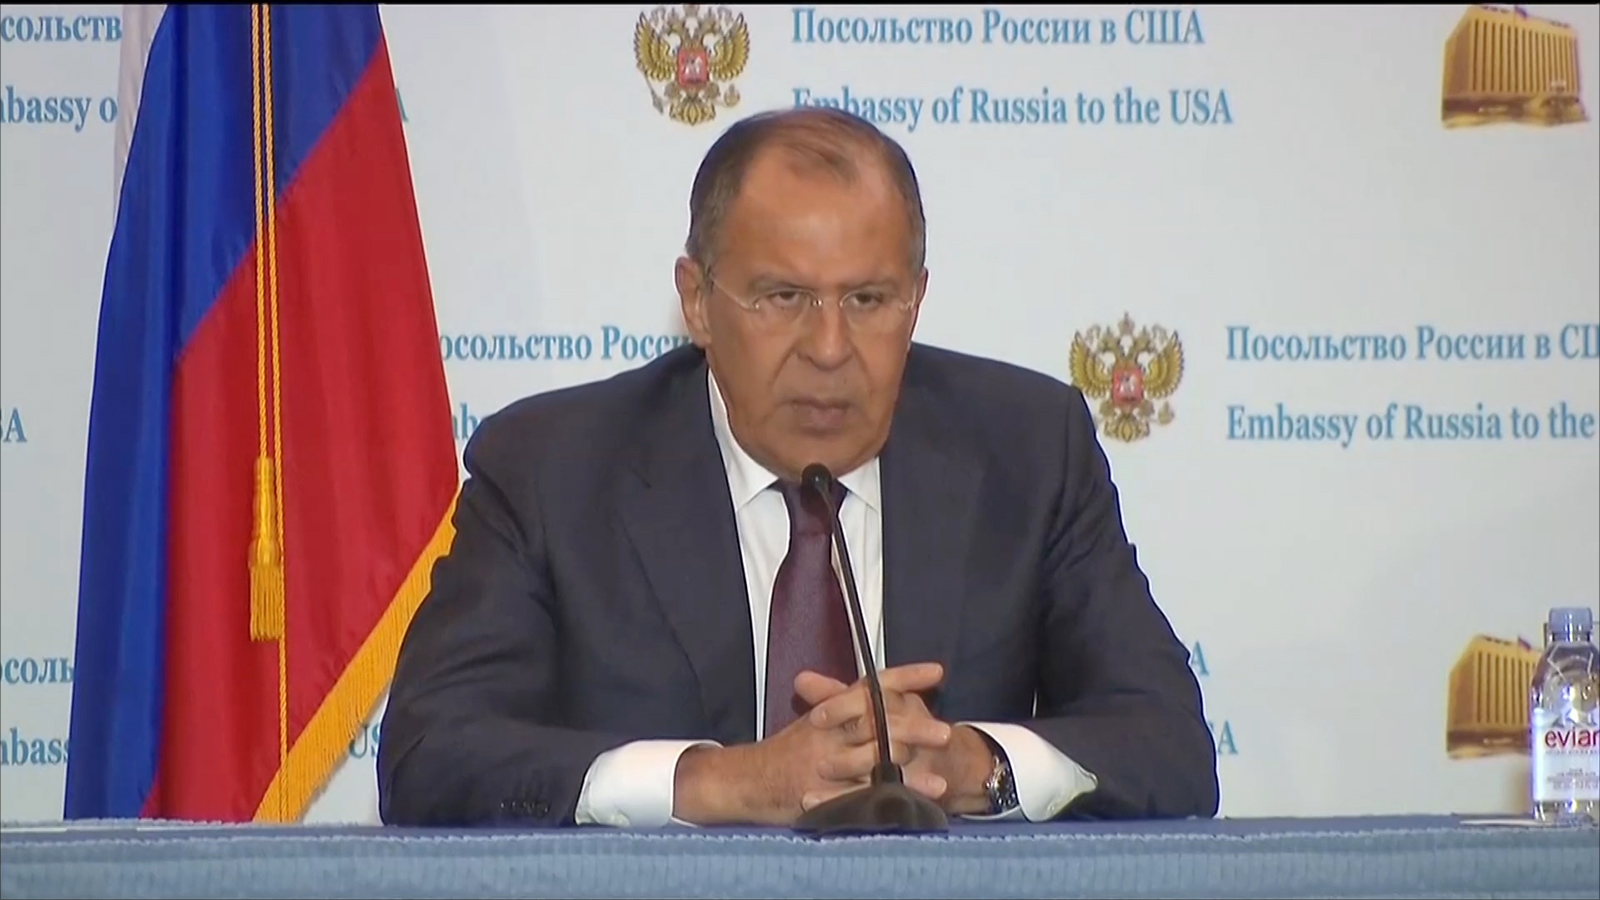 ‪لافروف: ليست هناك أدلة حتى الآن تدين روسيا بالتدخل في السياسة الداخلية الأميركية‬  (الجزيرة)